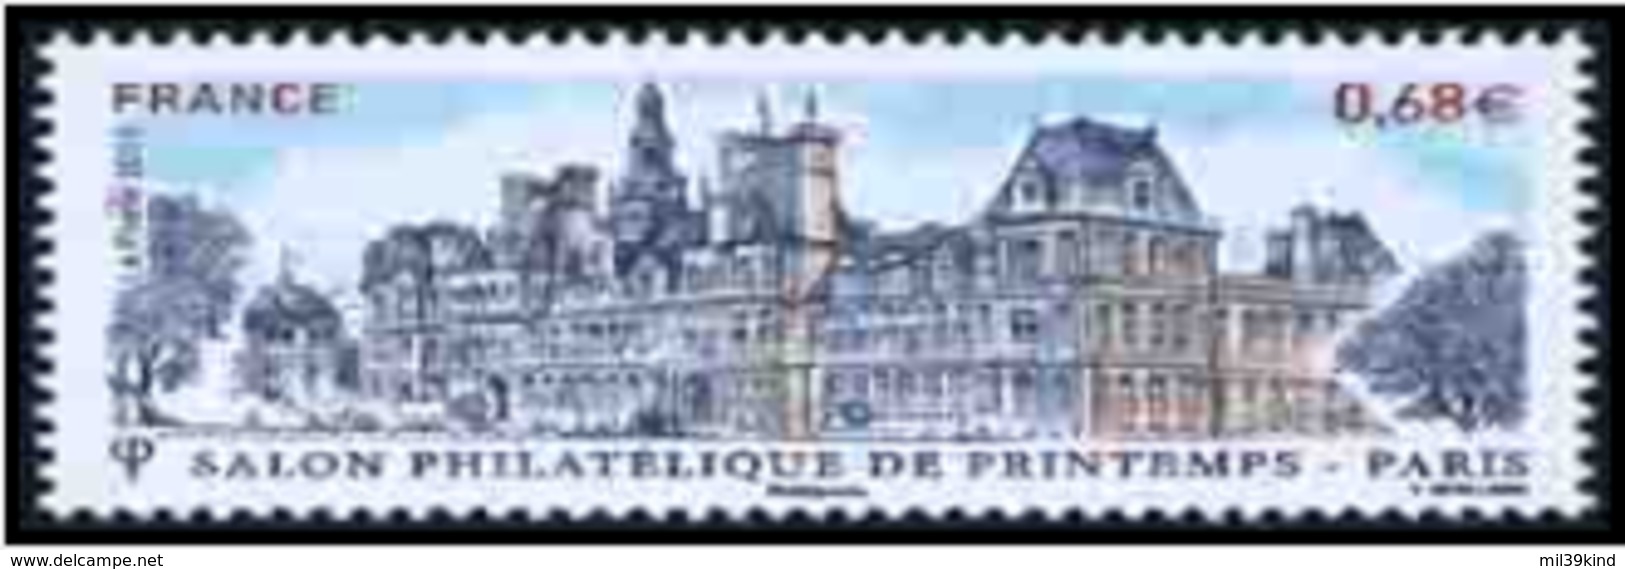 TIMBRE - FRANCE - 2015 - Salon Philatelique De Printemps - Neufs